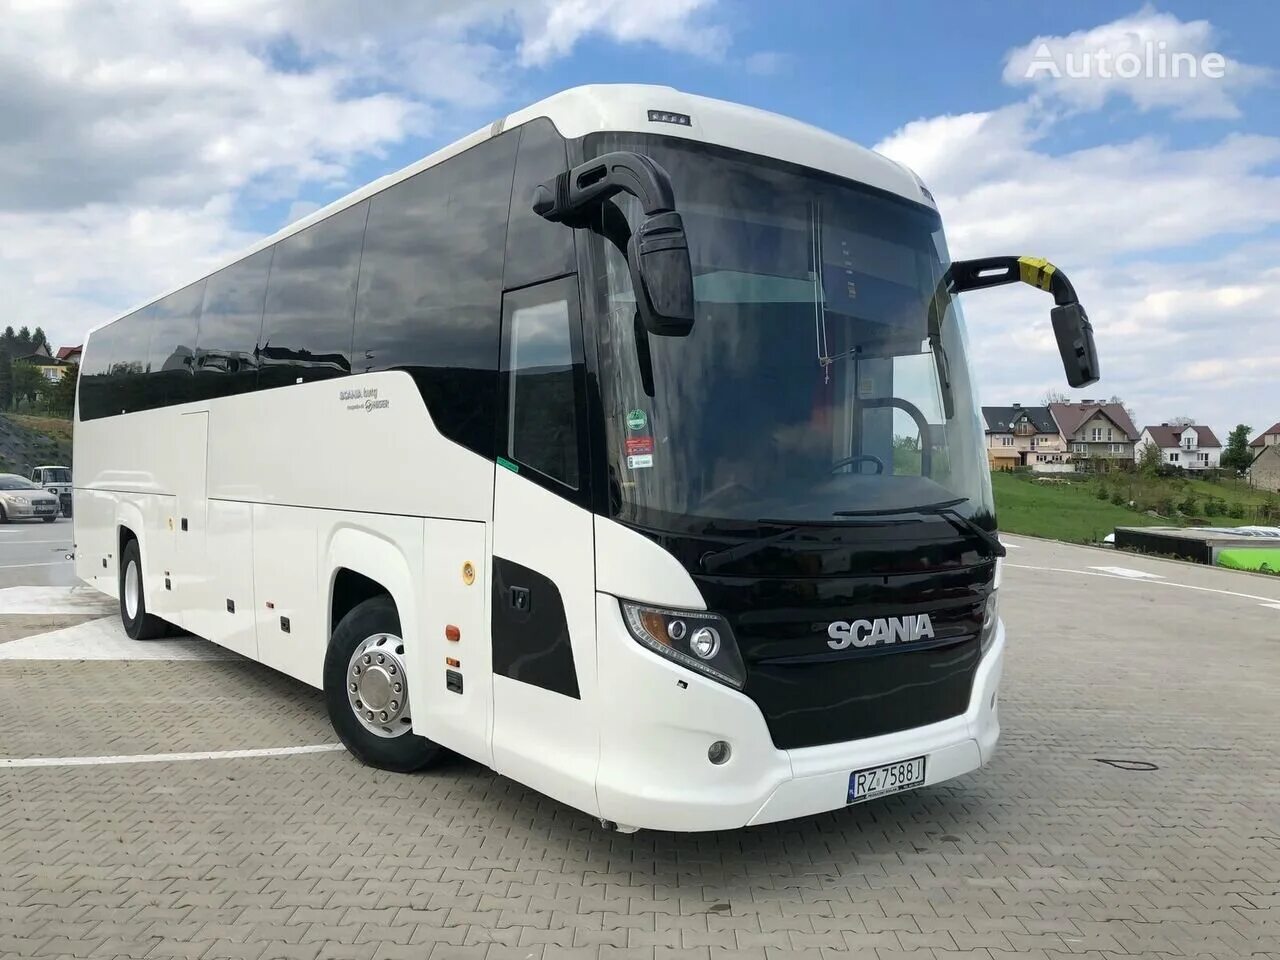 Scania (Higer) Touring. Автобус Скания туристический. Автобус Скания туринг. Скания автобус туристический Тоуринг.